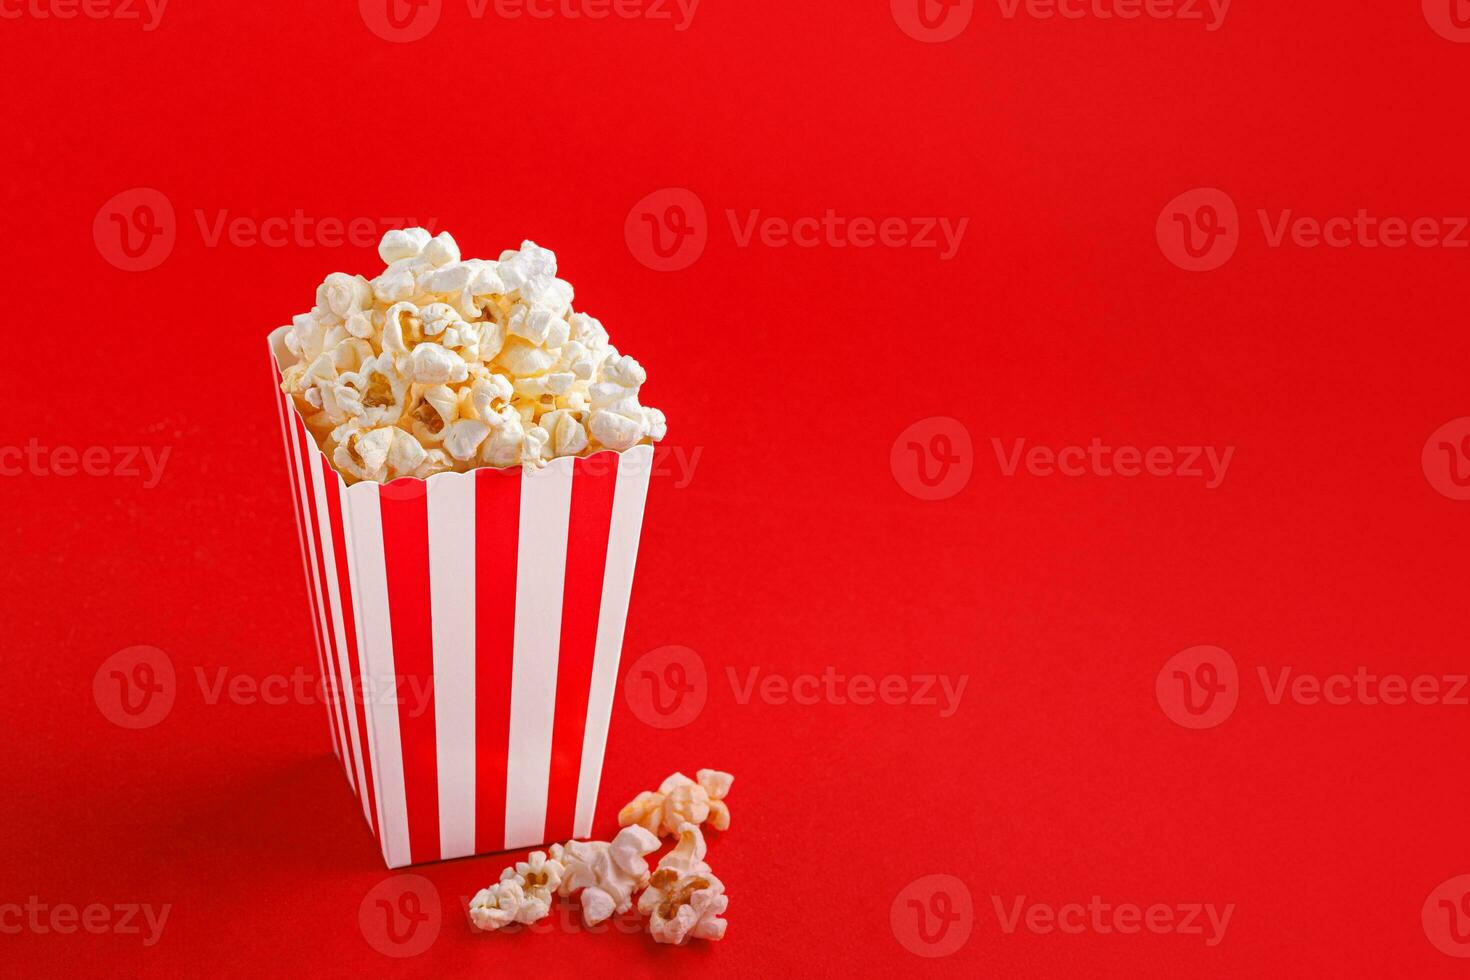 Glas mit Popcorn auf ein rot Hintergrund foto